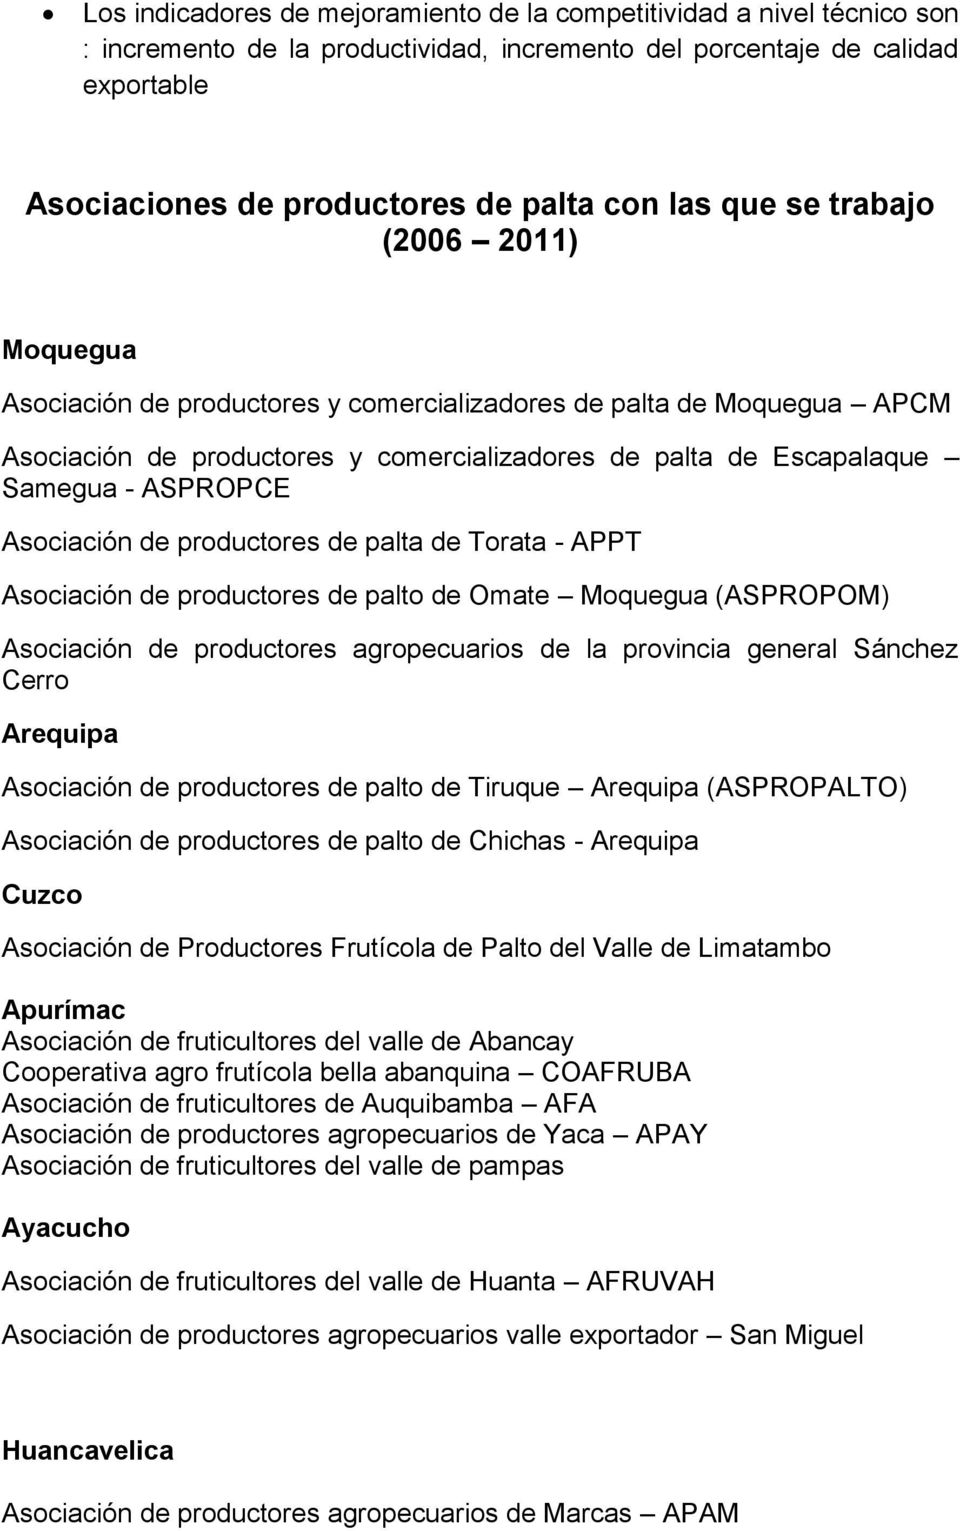 Asociación de productores de palta de Torata - APPT Asociación de productores de palto de Omate Moquegua (ASPROPOM) Asociación de productores agropecuarios de la provincia general Sánchez Cerro